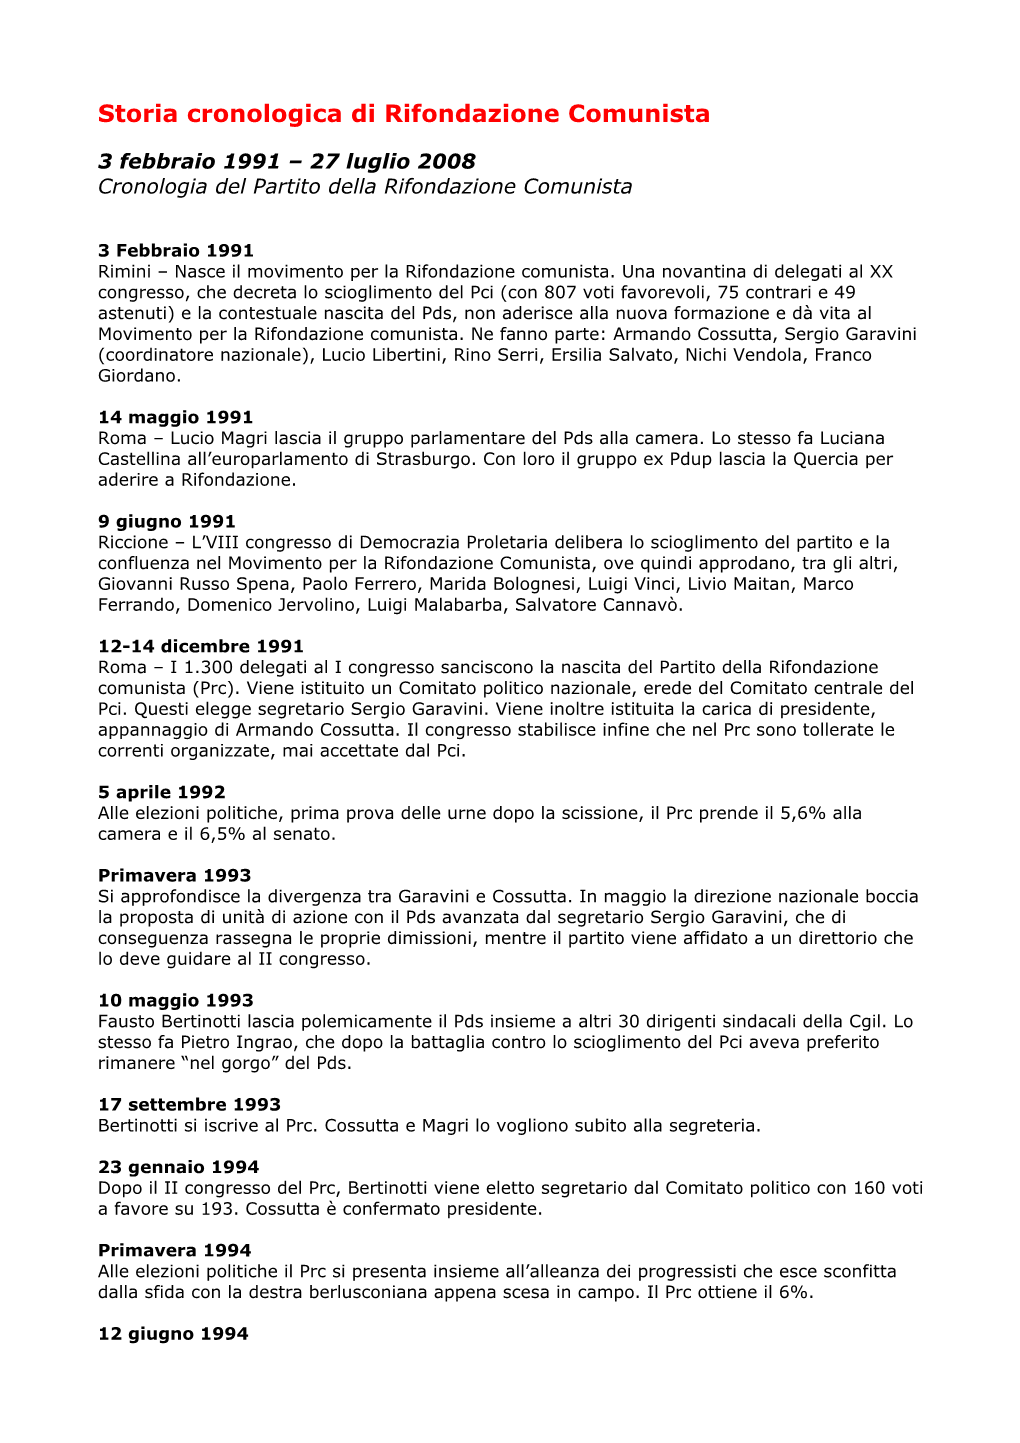 Storia Cronologica Di Rifondazione Comunista (1991-2008)